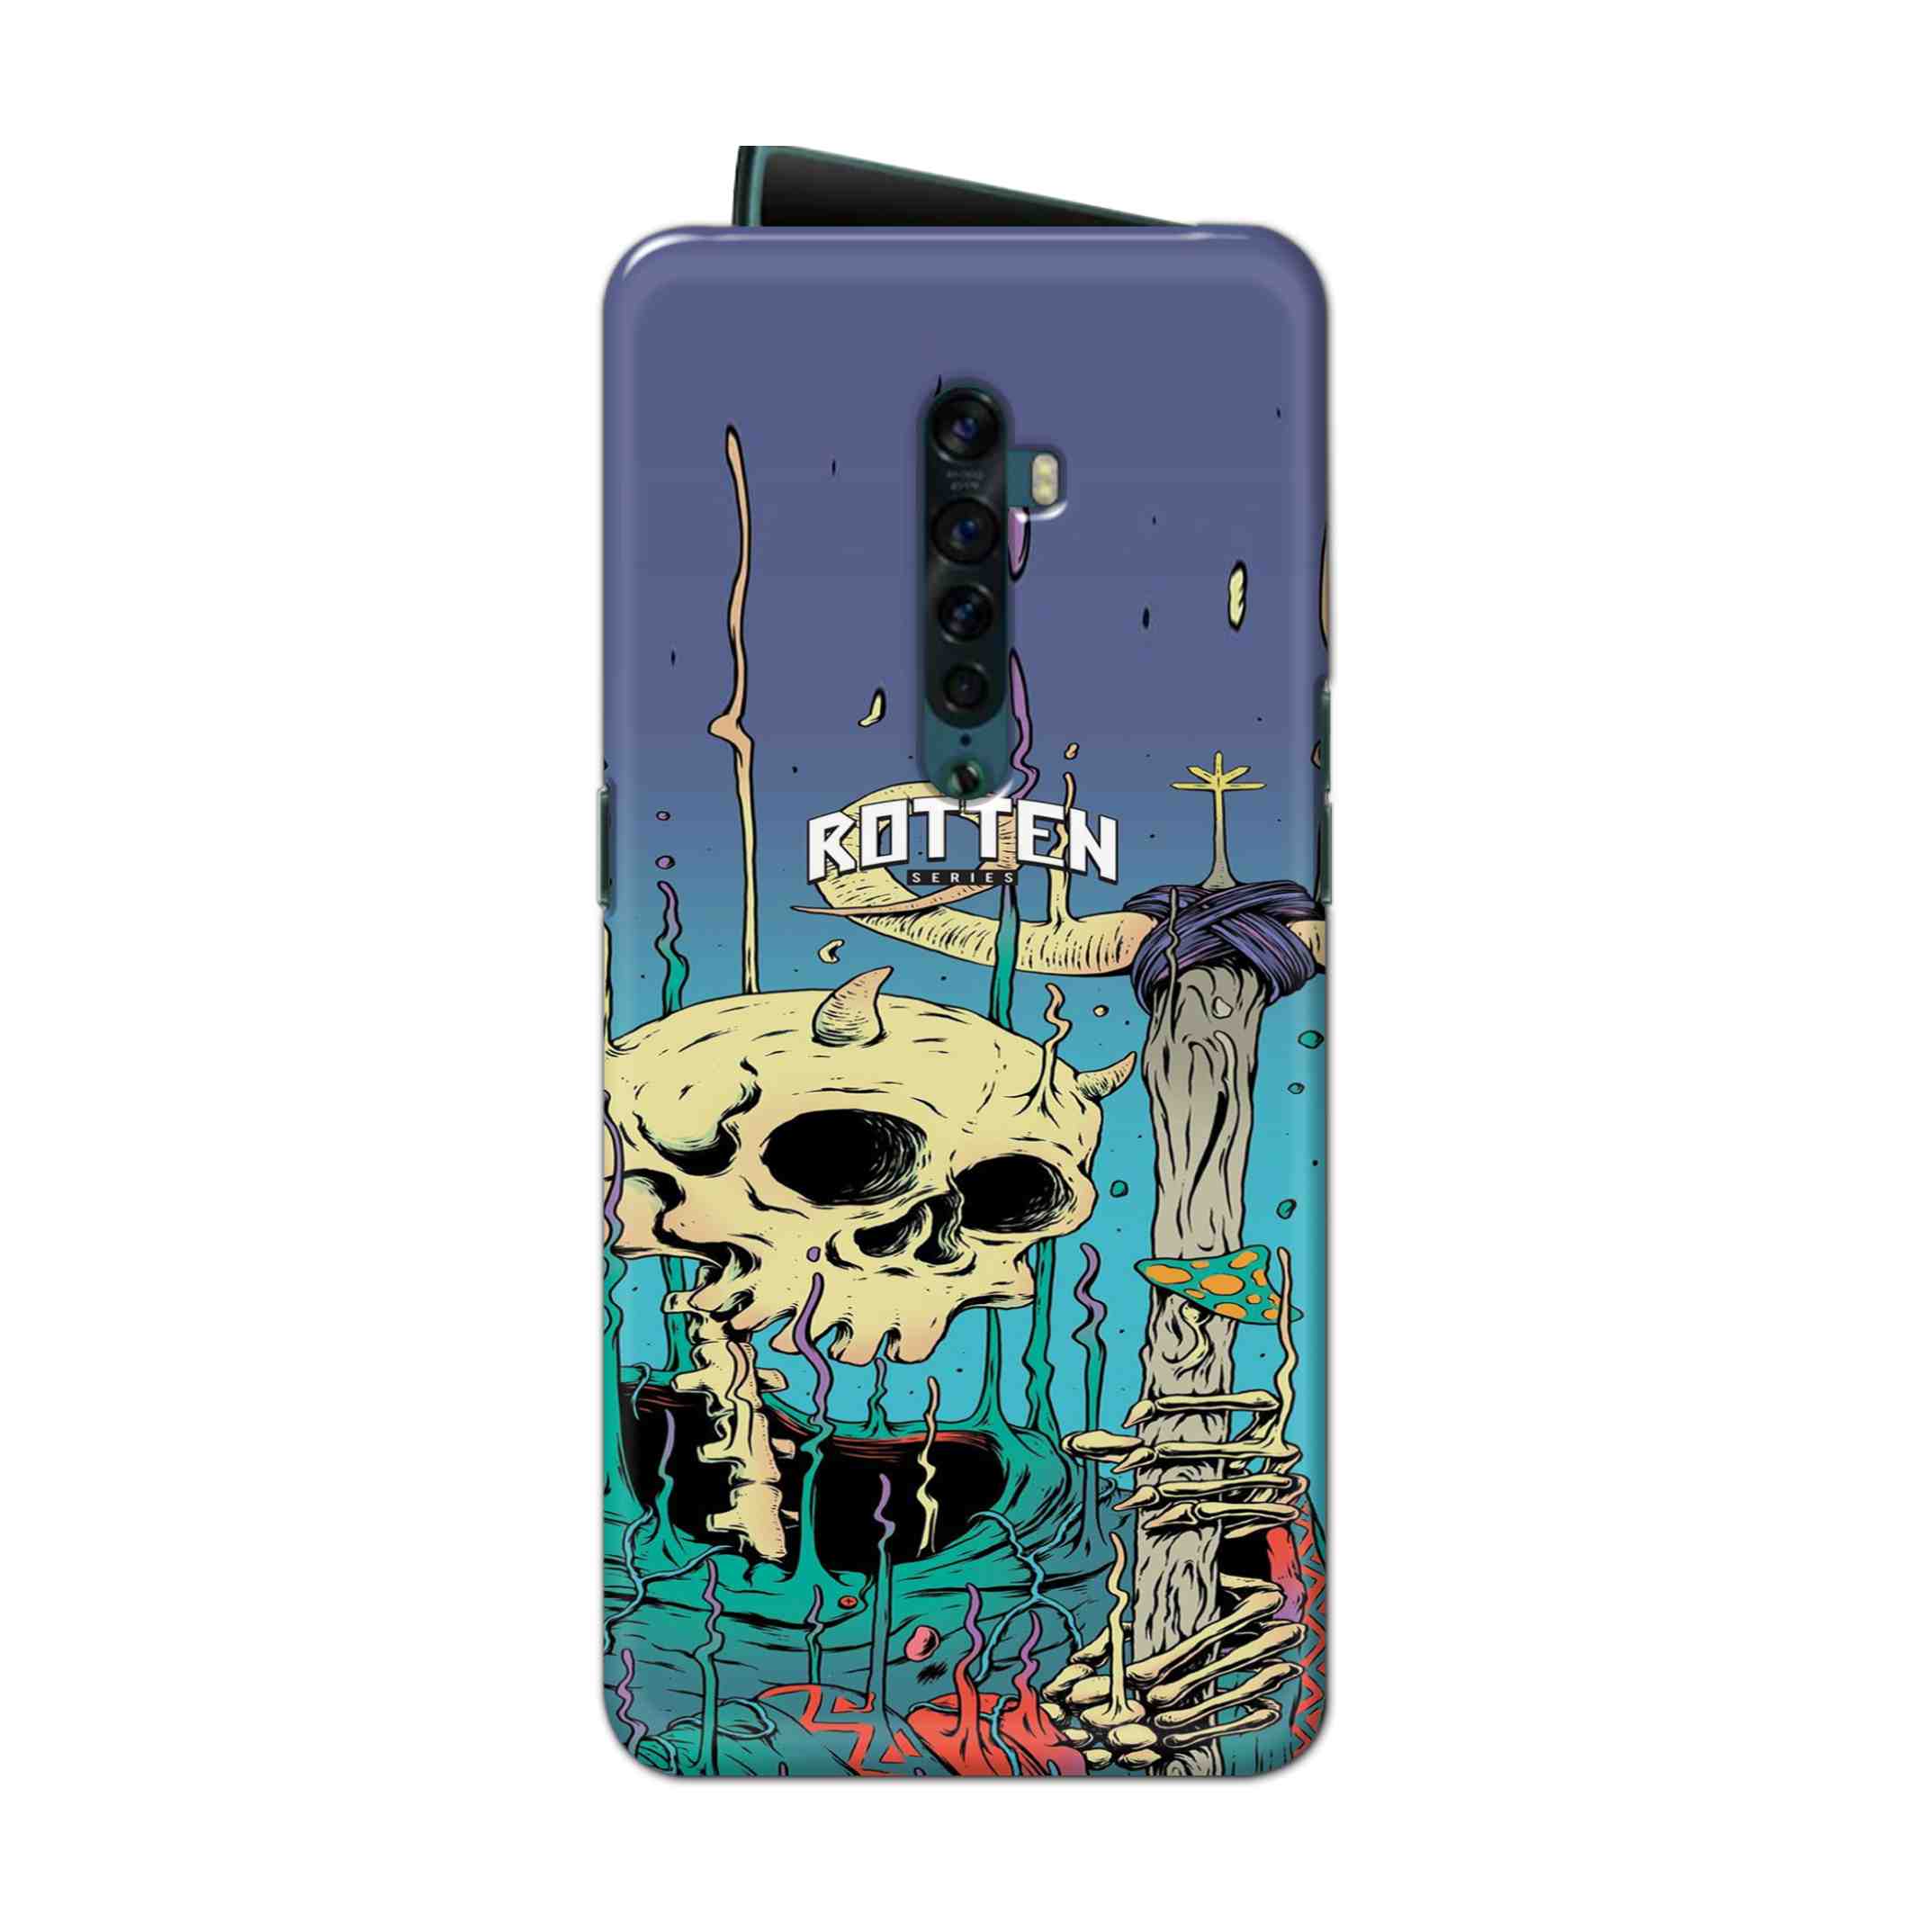 Buy Skull Hard Back Mobile Phone Case Cover For Oppo Reno 2 Online